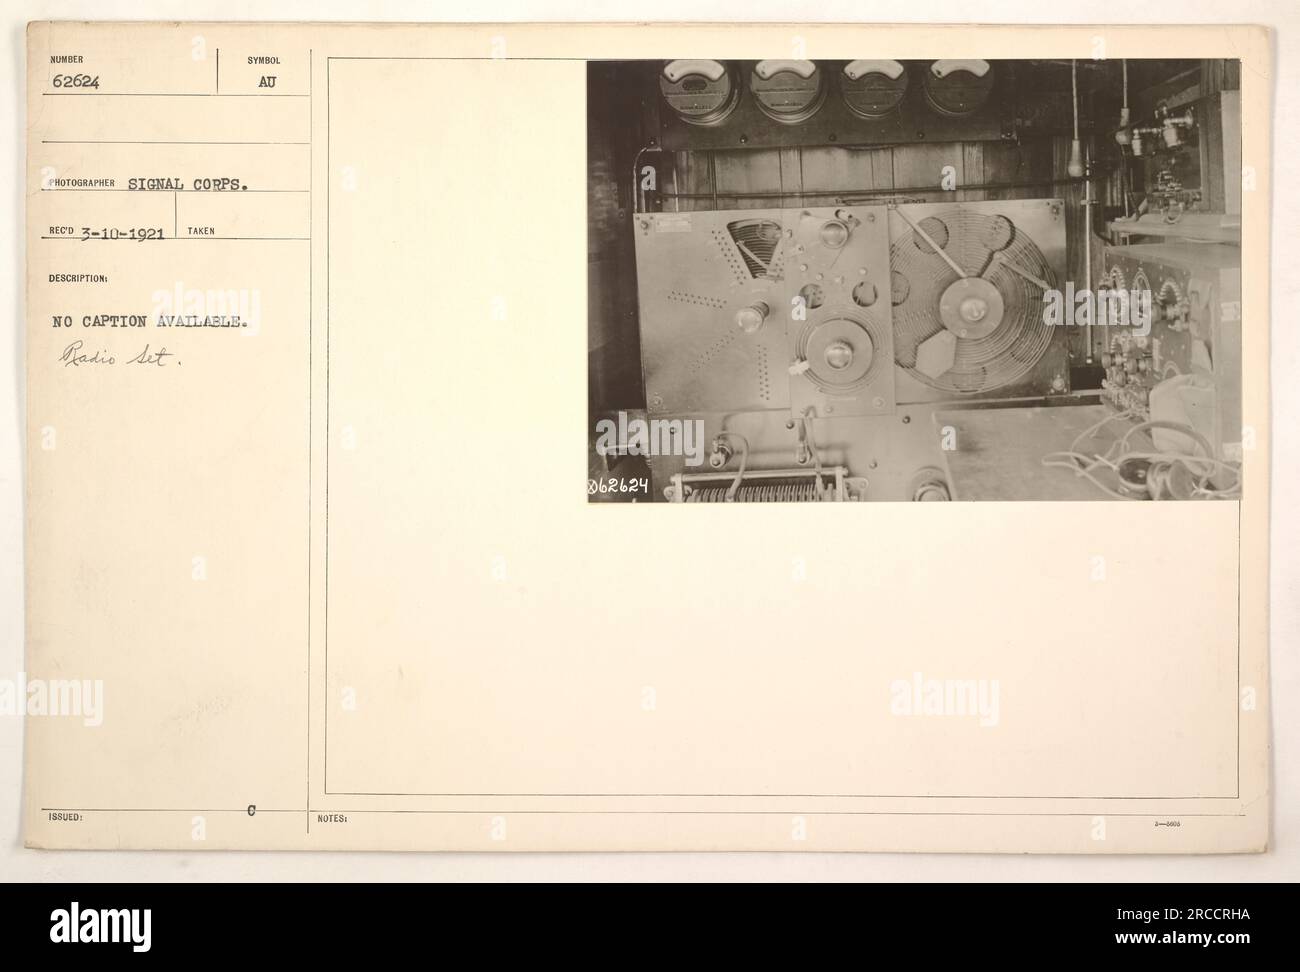 Una fotografia in bianco e nero che mostra un apparecchio radio, contrassegnato con IL NUMERO 62624. La fotografia è stata scattata dal Signal Corps durante la prima guerra mondiale, datata 10 marzo 1921. Non è disponibile alcuna didascalia per descrivere i dettagli specifici o lo scopo di questo apparecchio radio. Foto Stock